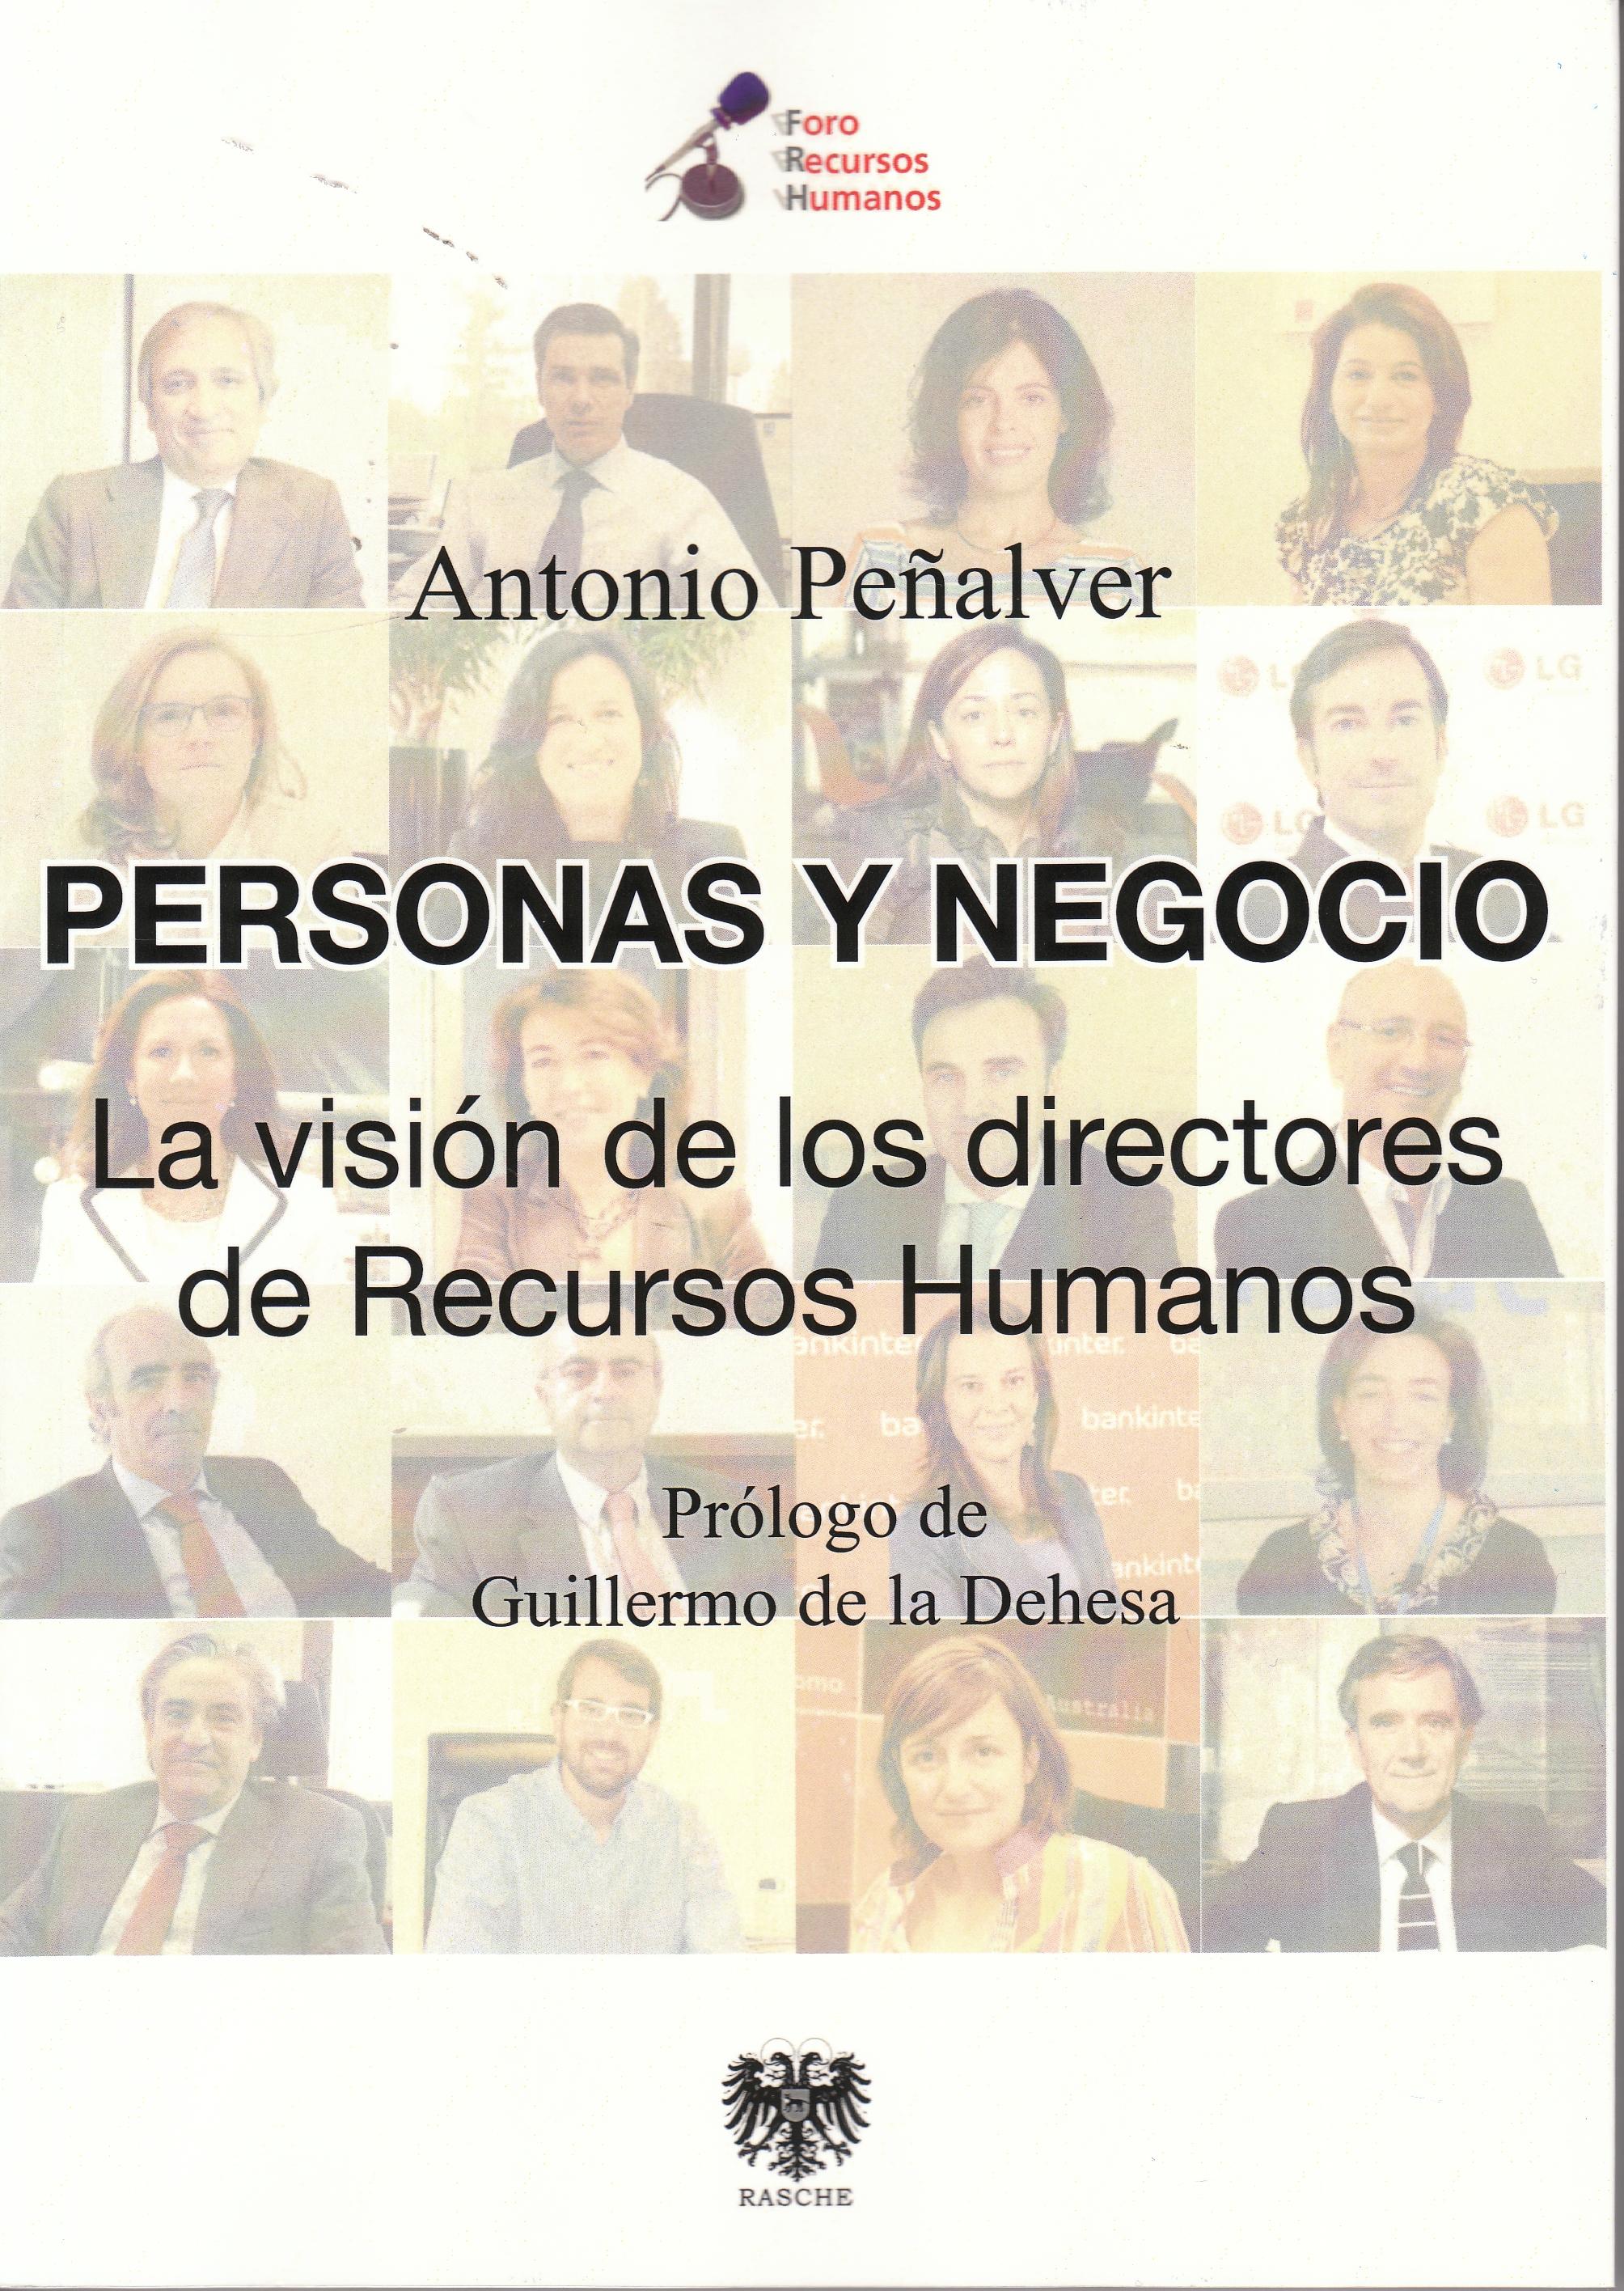 Personas y negocio "La visión de los directivos de Recursos Humanos"